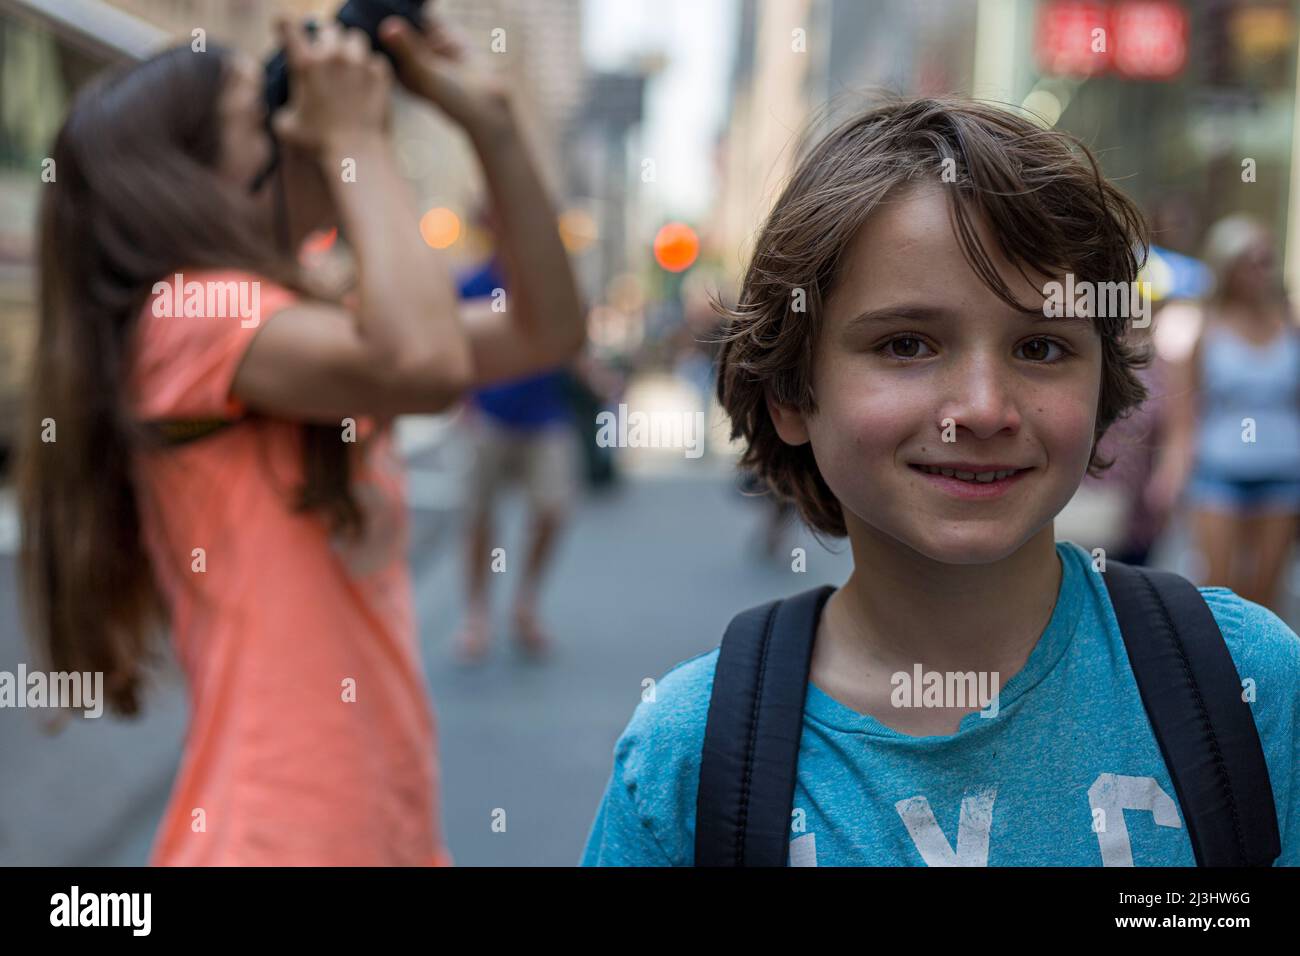 5 Avenue & West 54 Street, New York City, NY, EE.UU., 14 años de edad adolescente caucásico y 12 años de edad adolescente caucásico - ambos con pelo marrón y estilo de verano en las calles Foto de stock